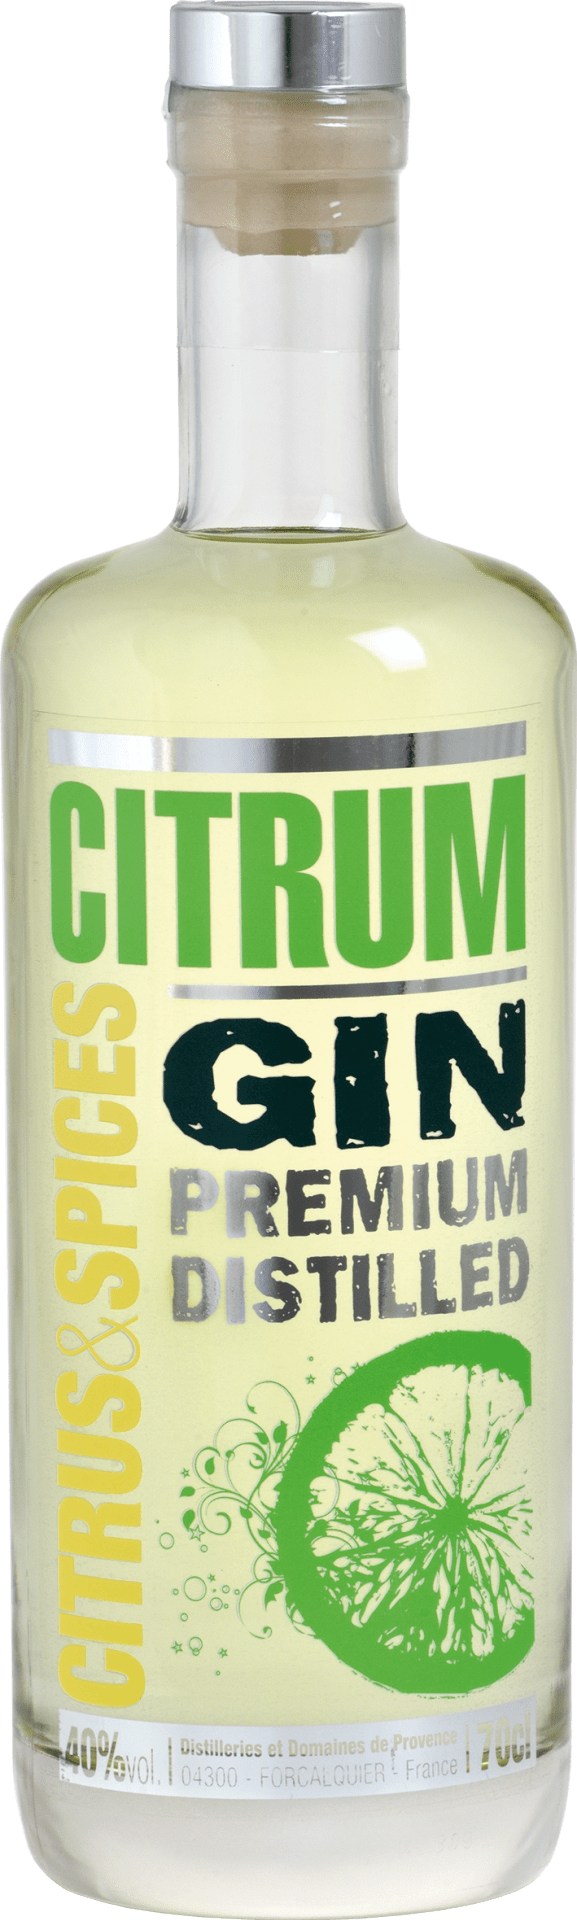 Gin Citrum